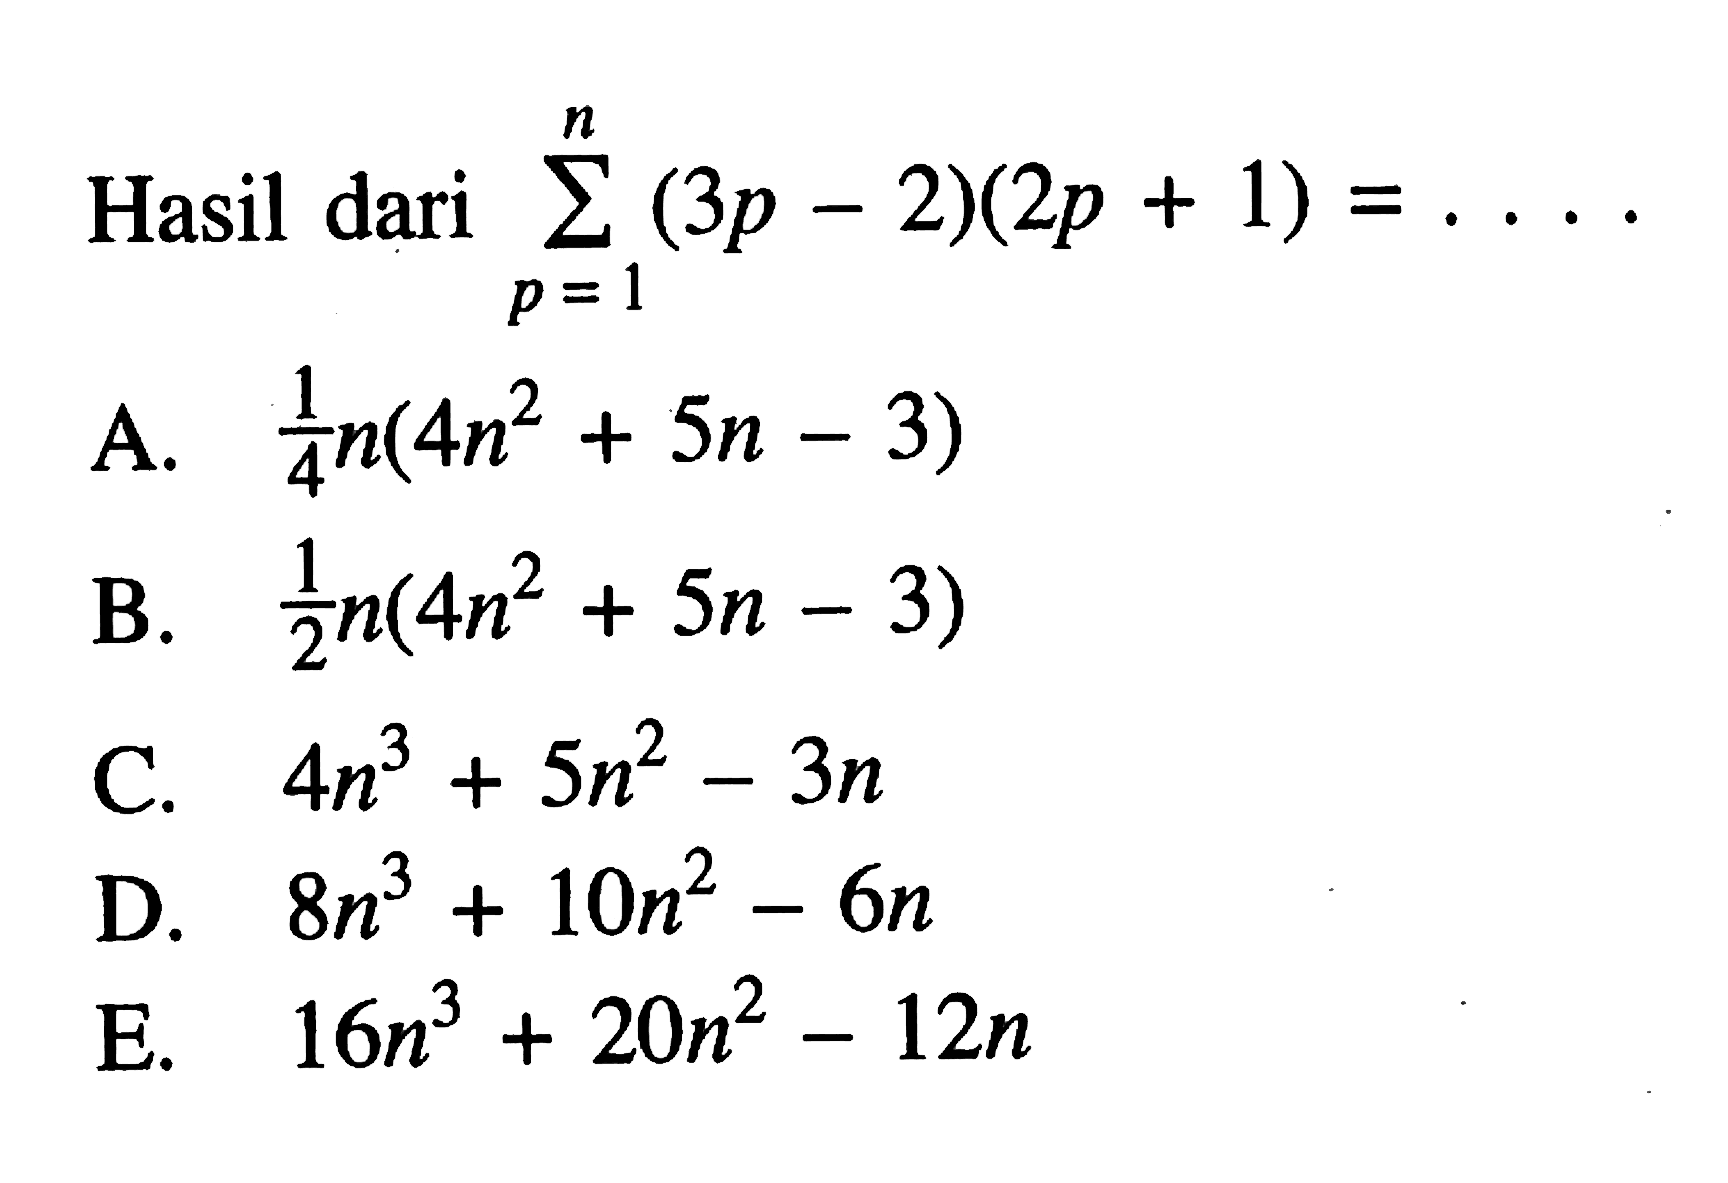 Hasil dari sigma p=1 n (3p-2)(2p+1)=